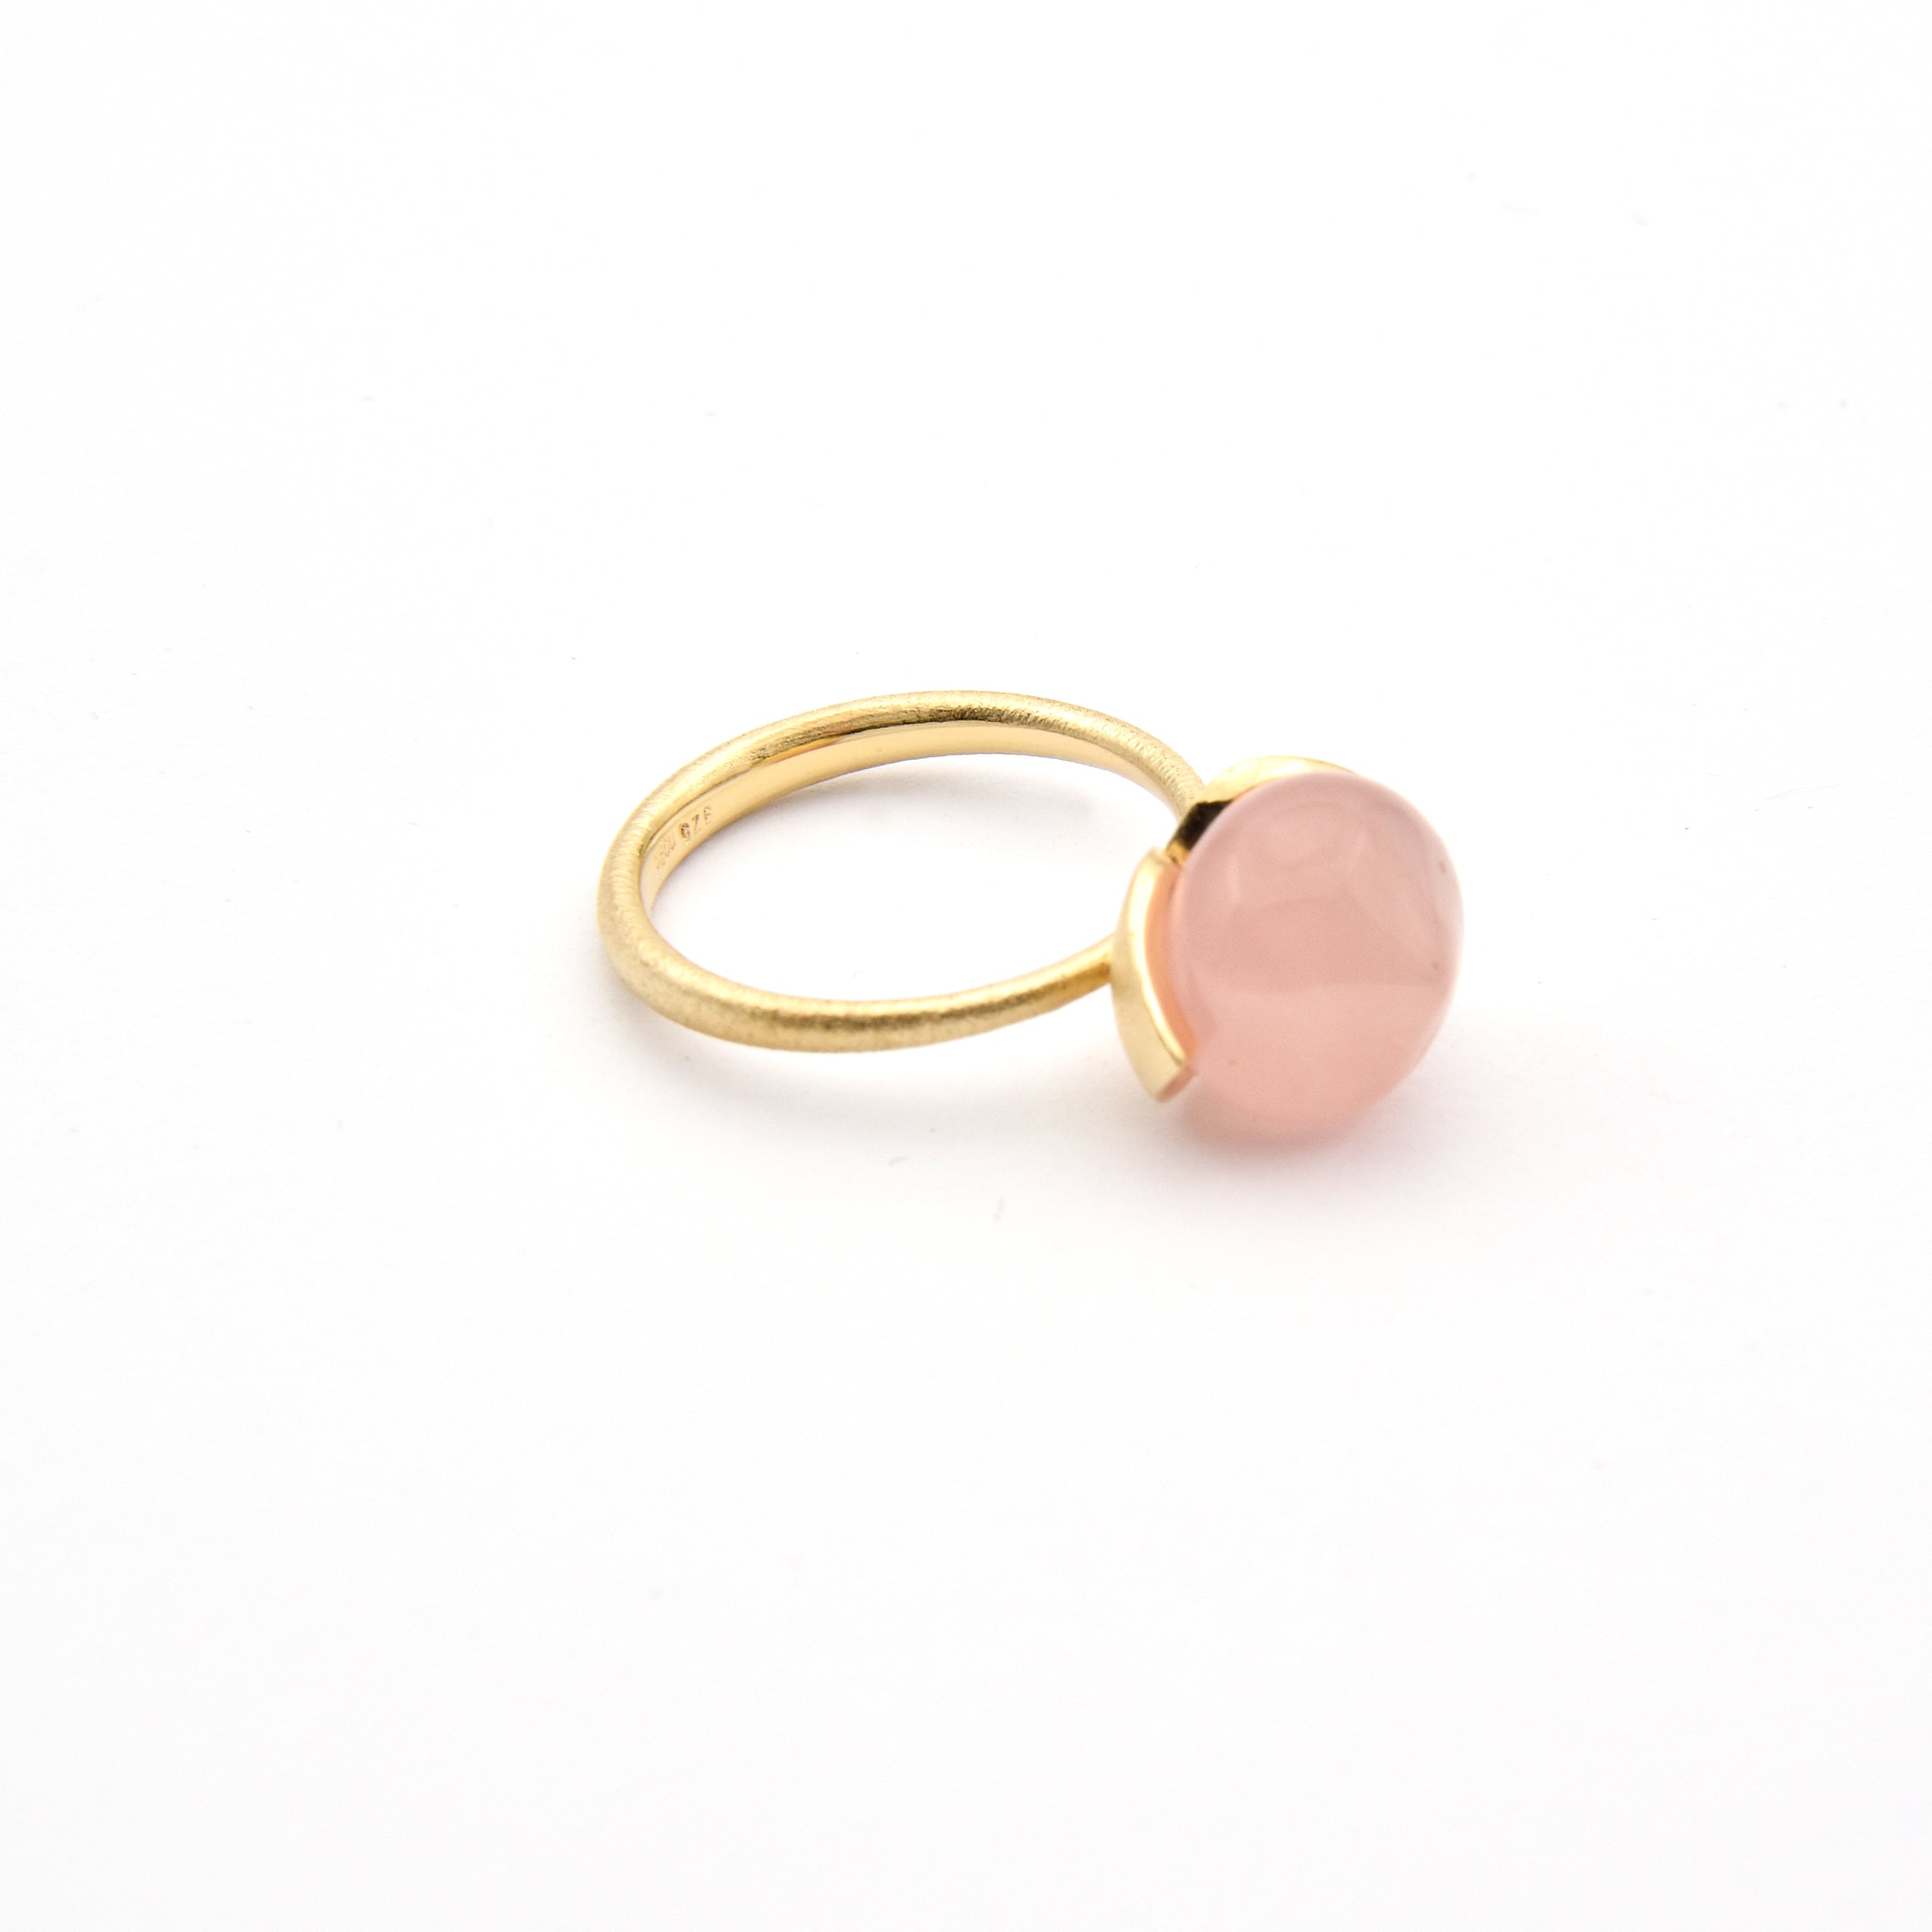 Dolce ring "medium" with rose quartz 925/-